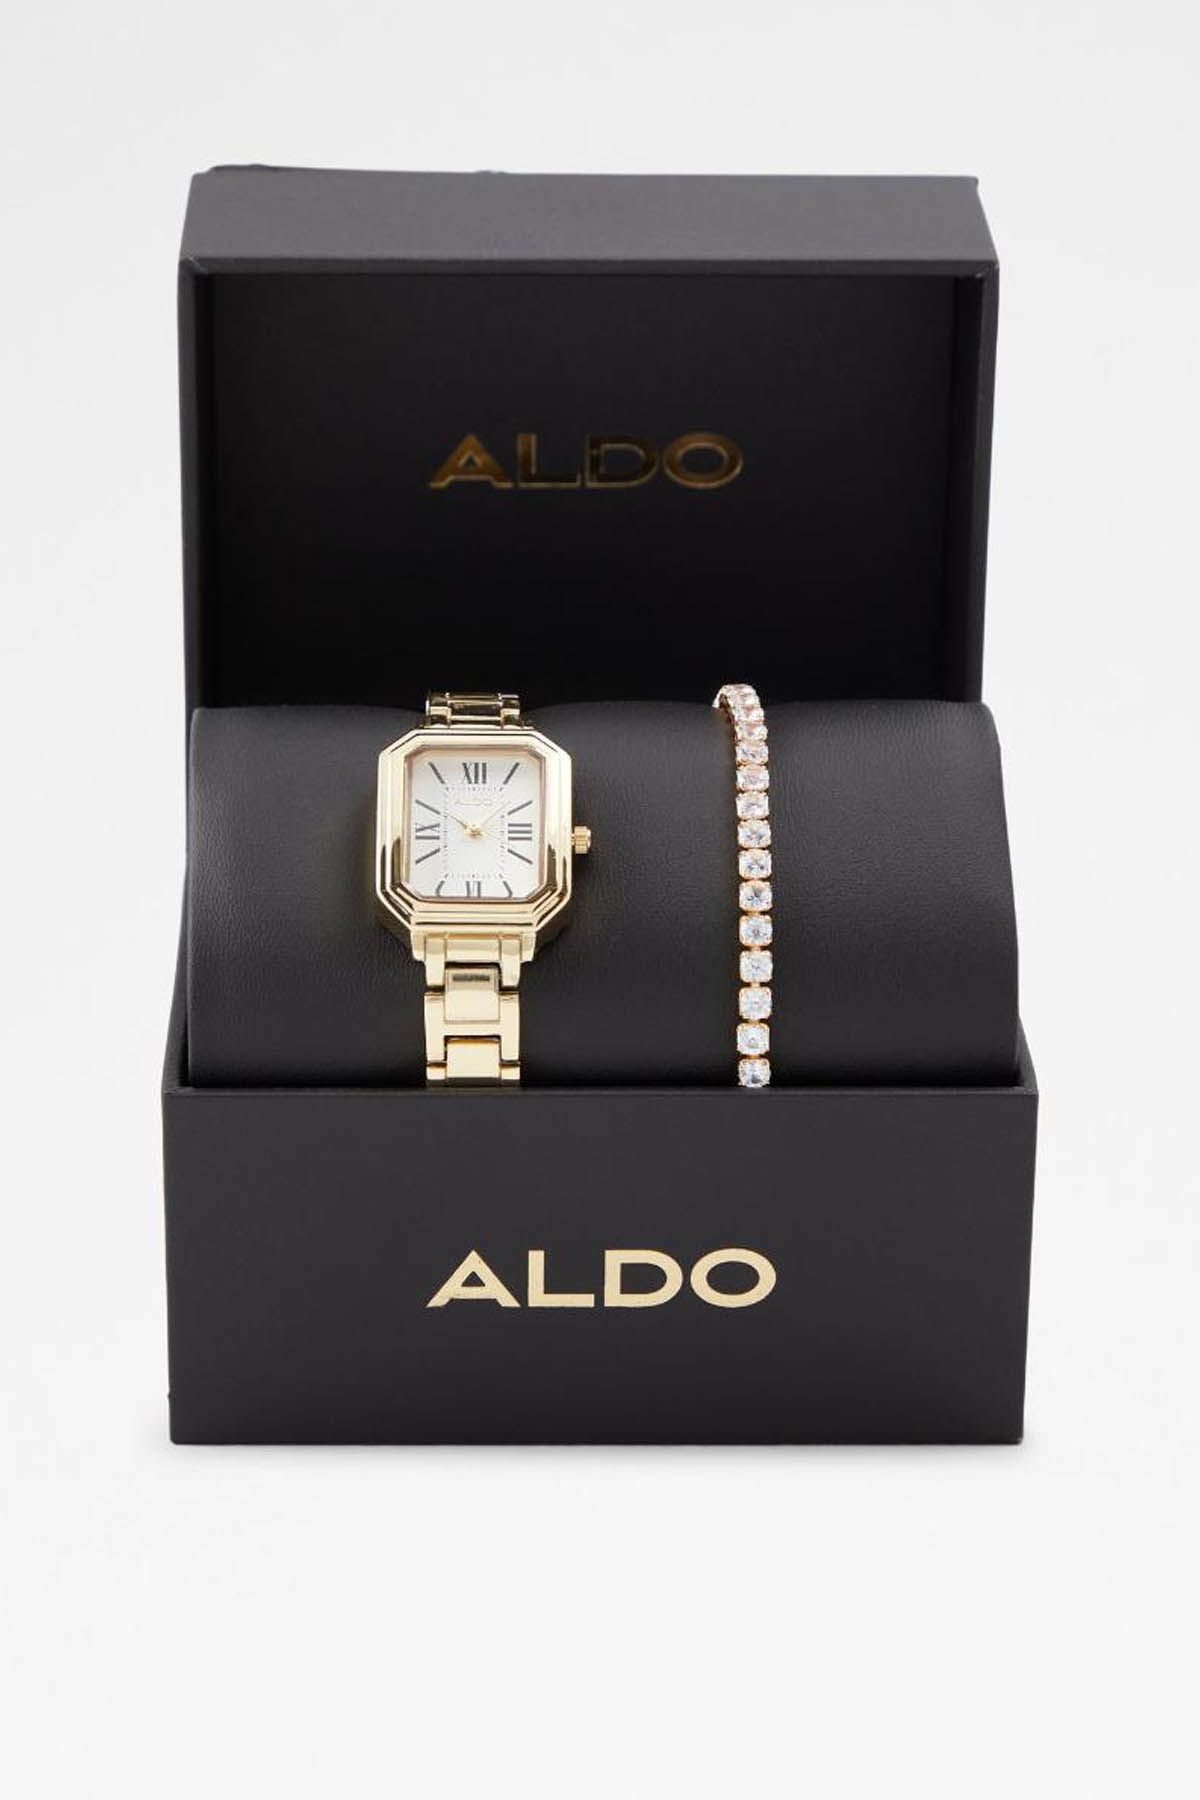 Buy ALDO Watches Online - Best Deals – Justdial Shop Online.